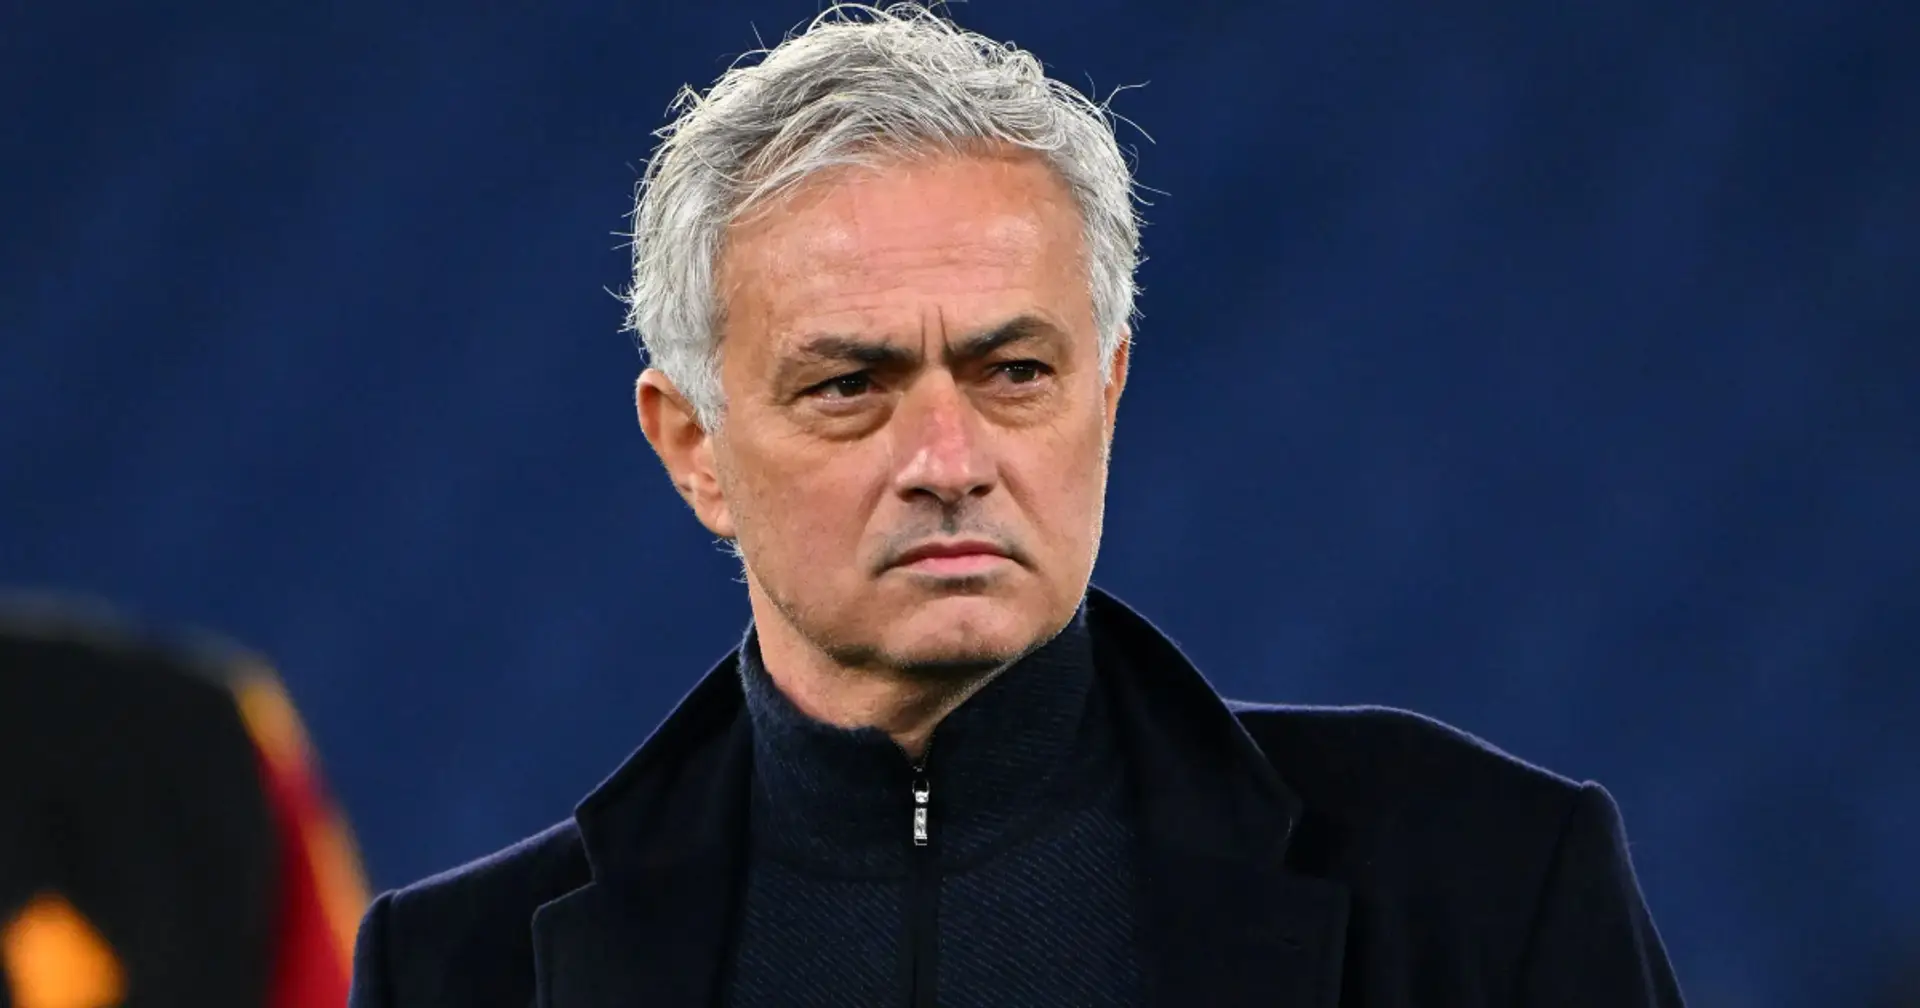 "Ich wurde emotional": Jose Mourinho behauptet, es sei ein Fehler gewesen, in Rom zu bleiben, anstatt Portugal zu übernehmen 